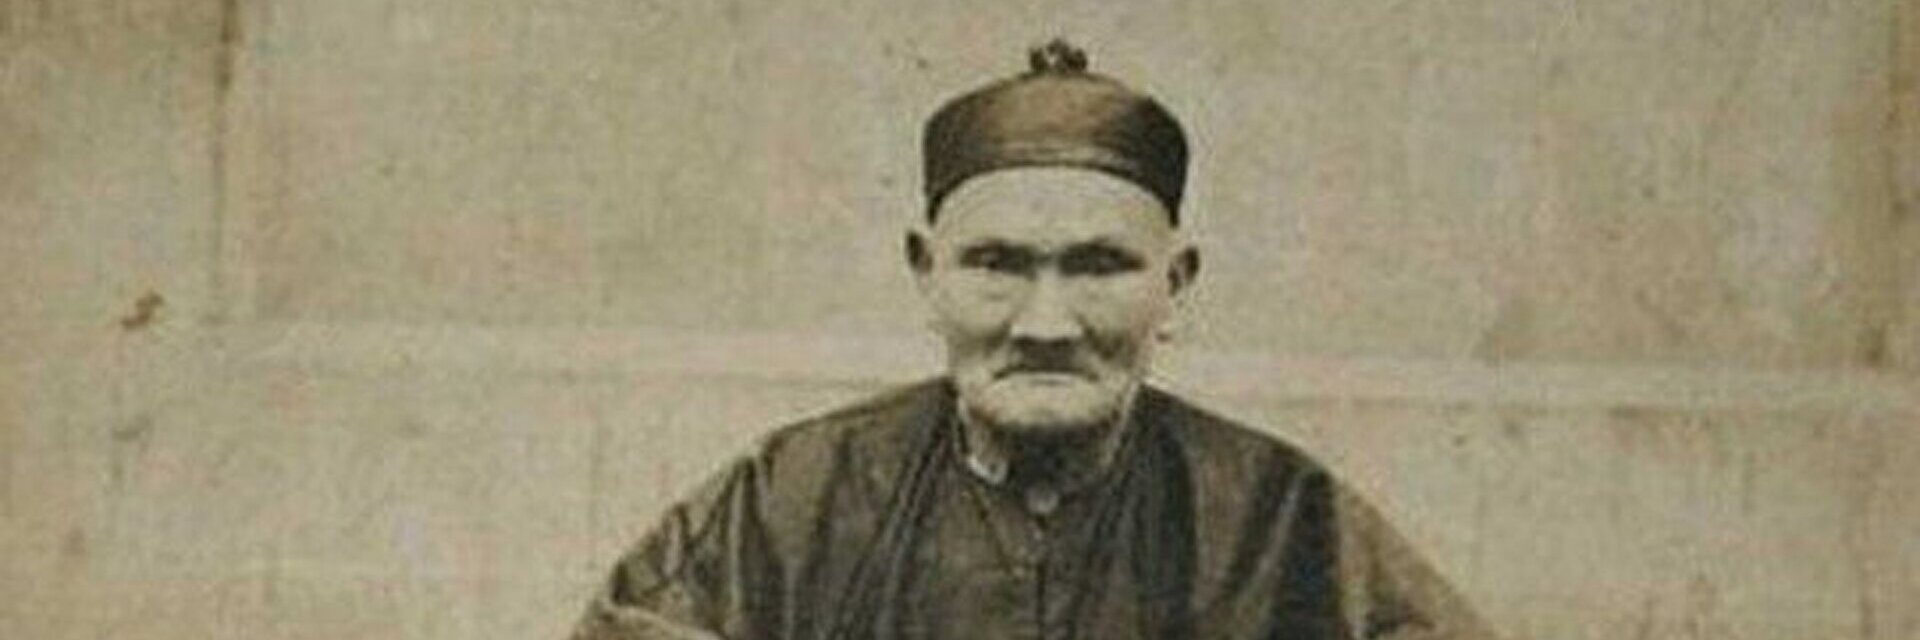 Максимально прожил человек. Ли Цинъюнь (1677—1933). Ли Цинъюнь долгожитель. Ли Чинг-Юн долгожитель. Ли Цинъюнь 256 лет.